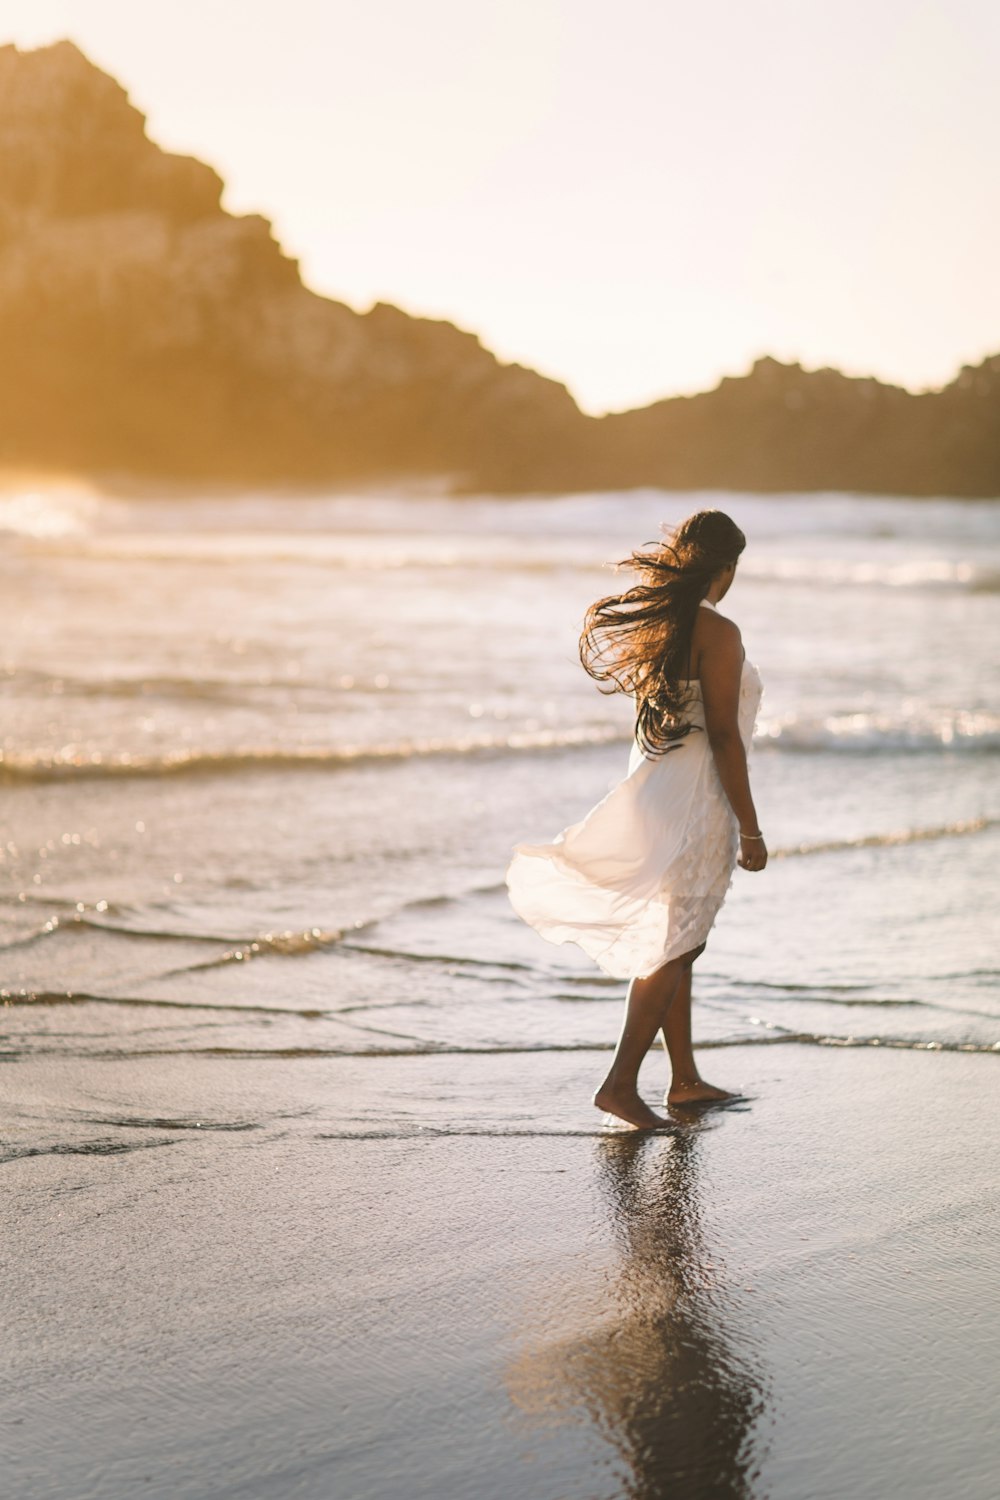 ゴールデンアワーの岩層近くの海岸に立つ女性のセレクティブフォーカス写真